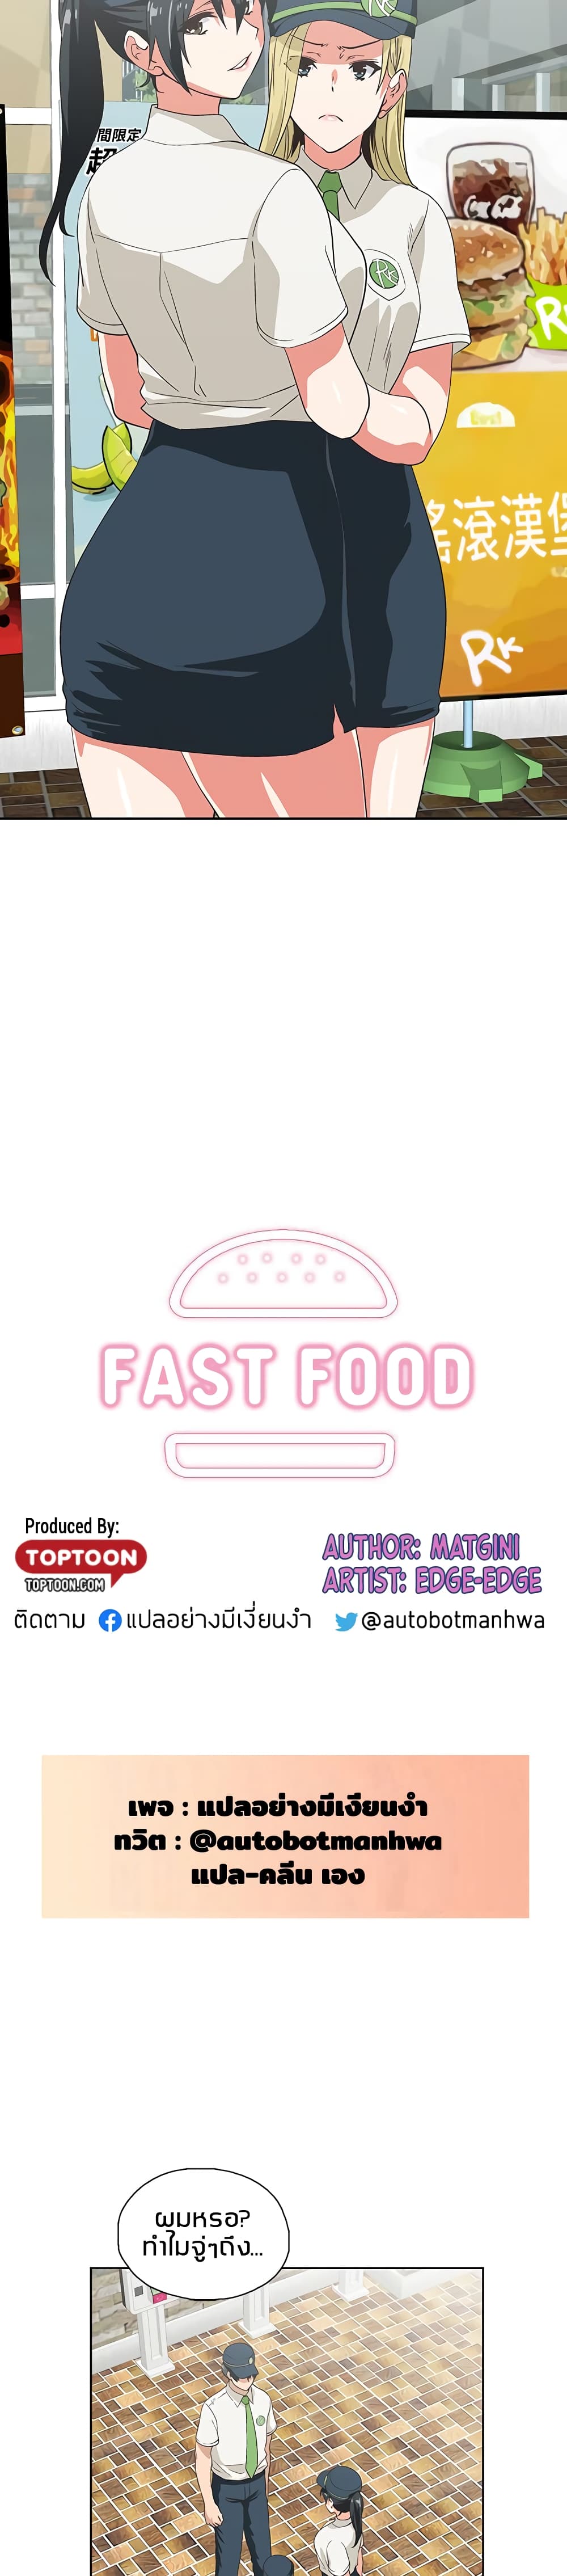 Fast Food 25 (2)